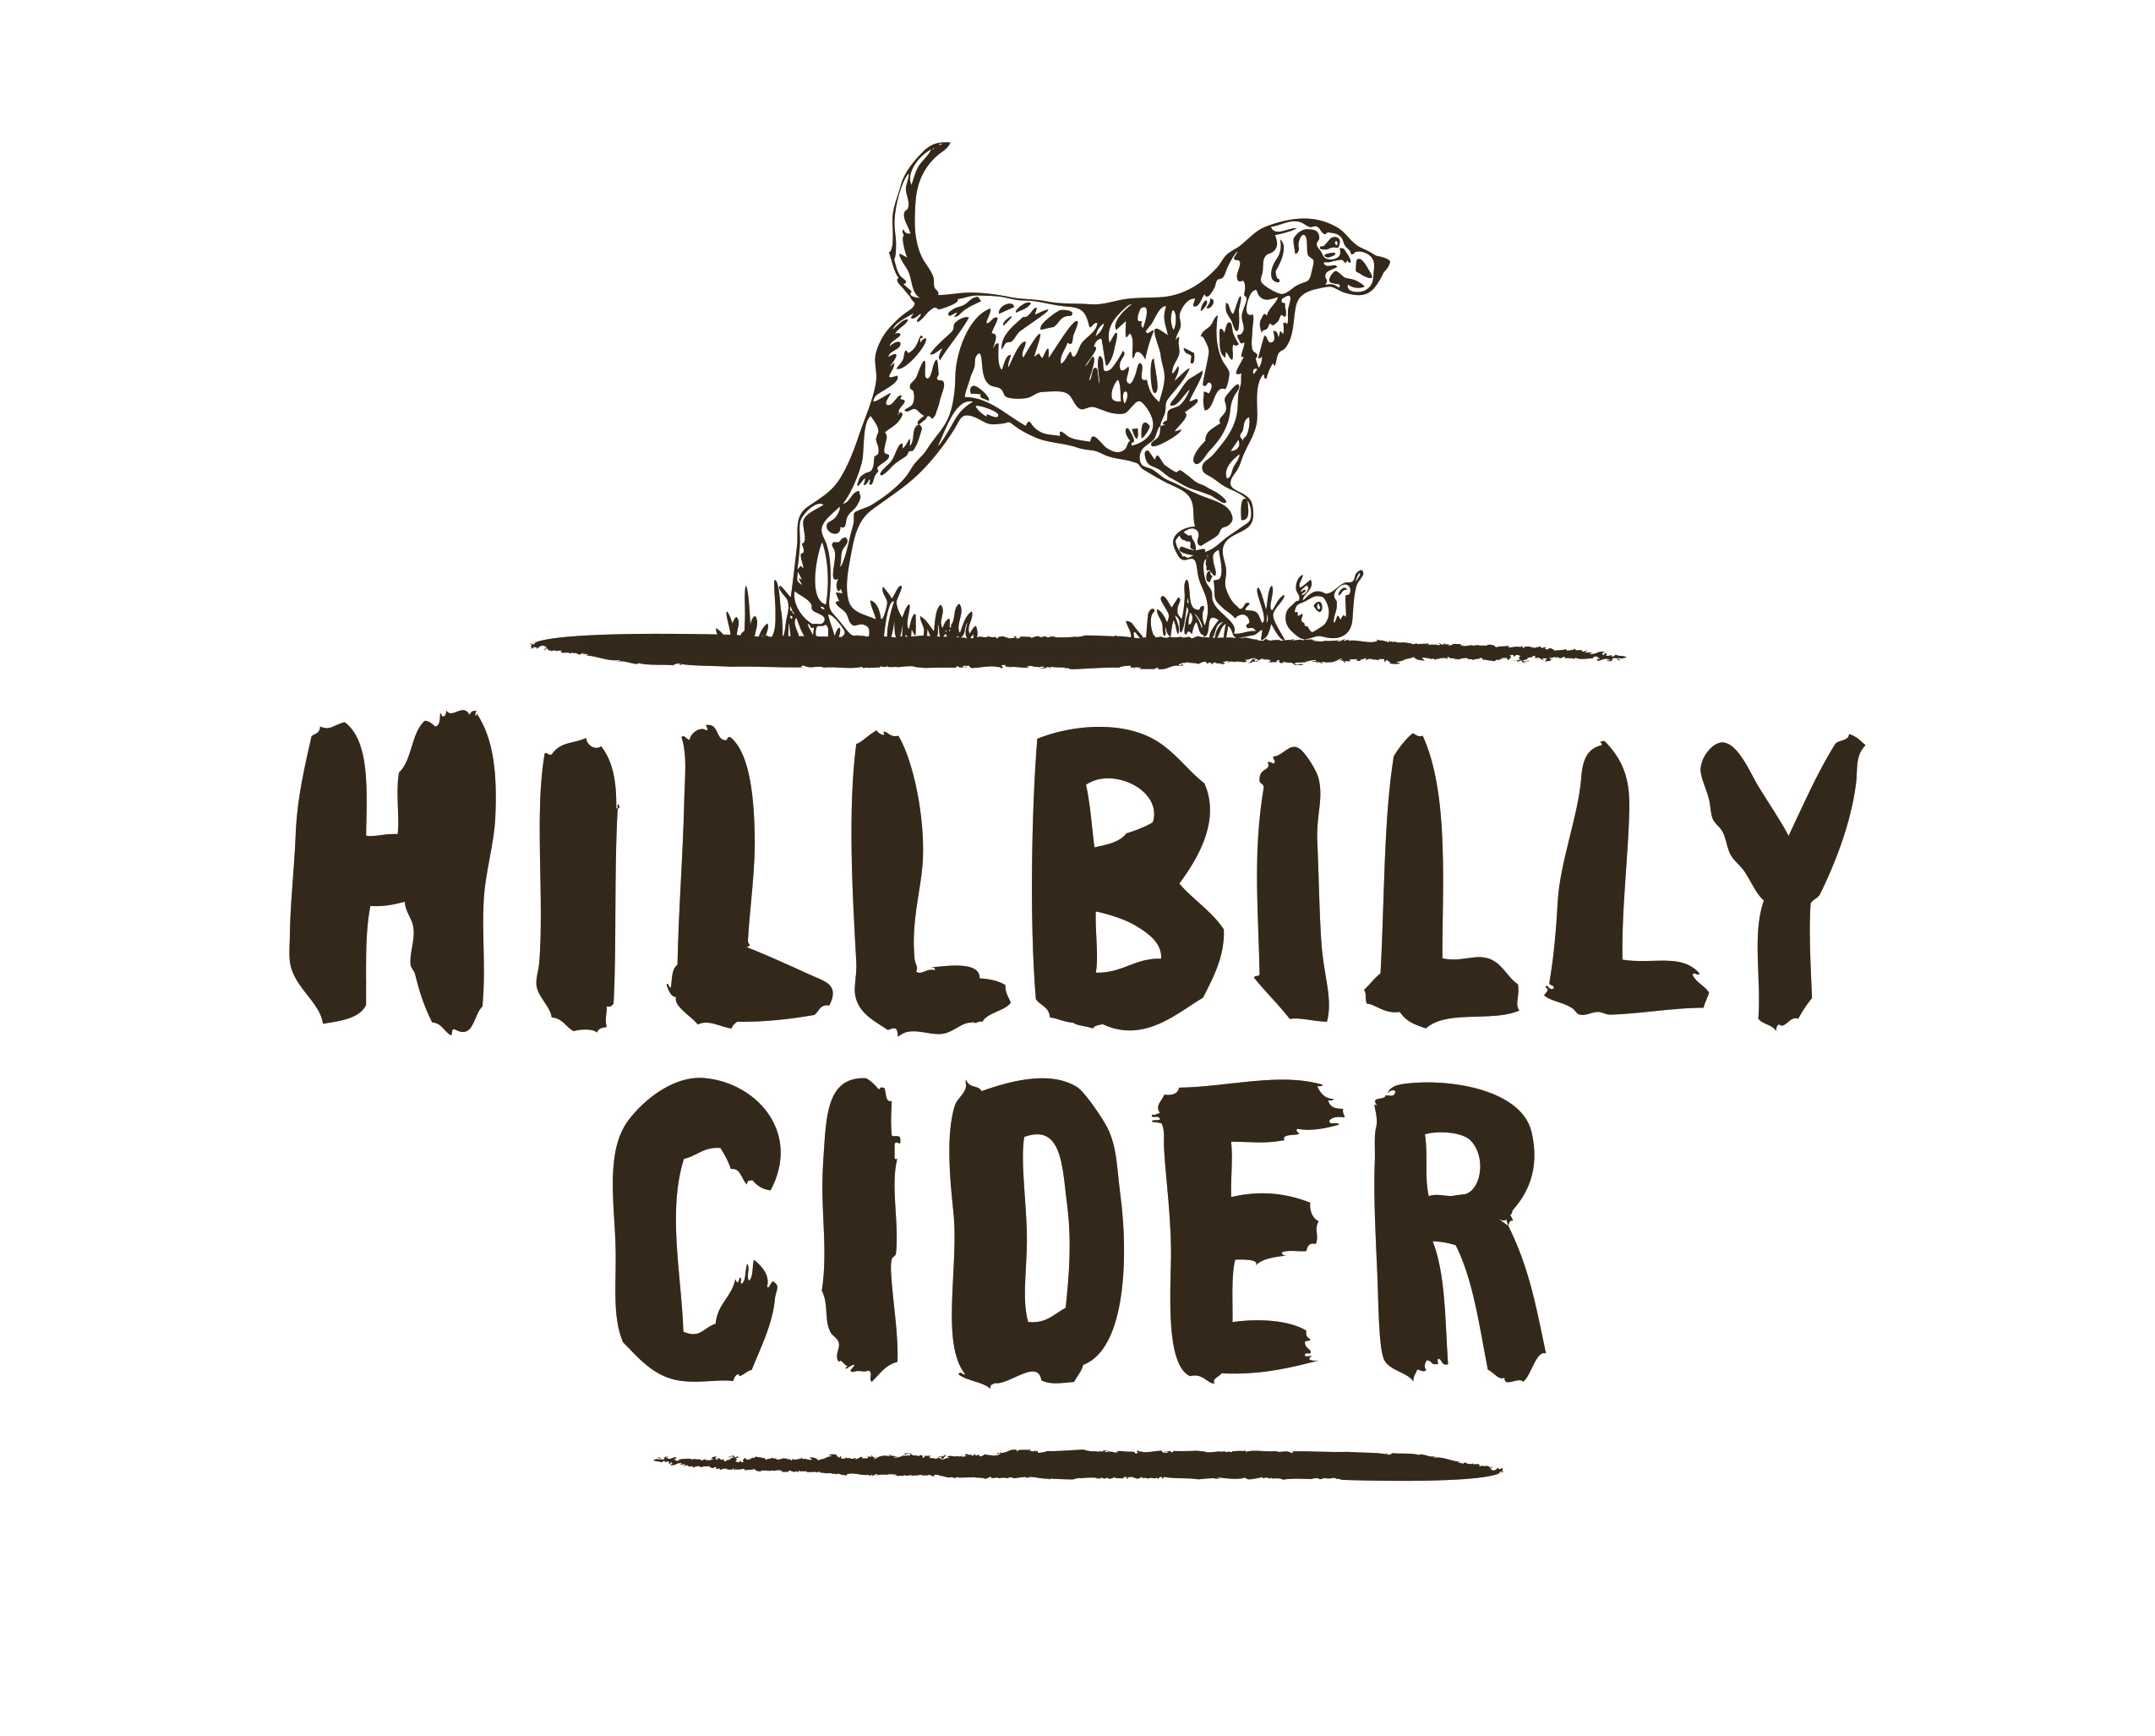 Hillbilly Cider Shed 